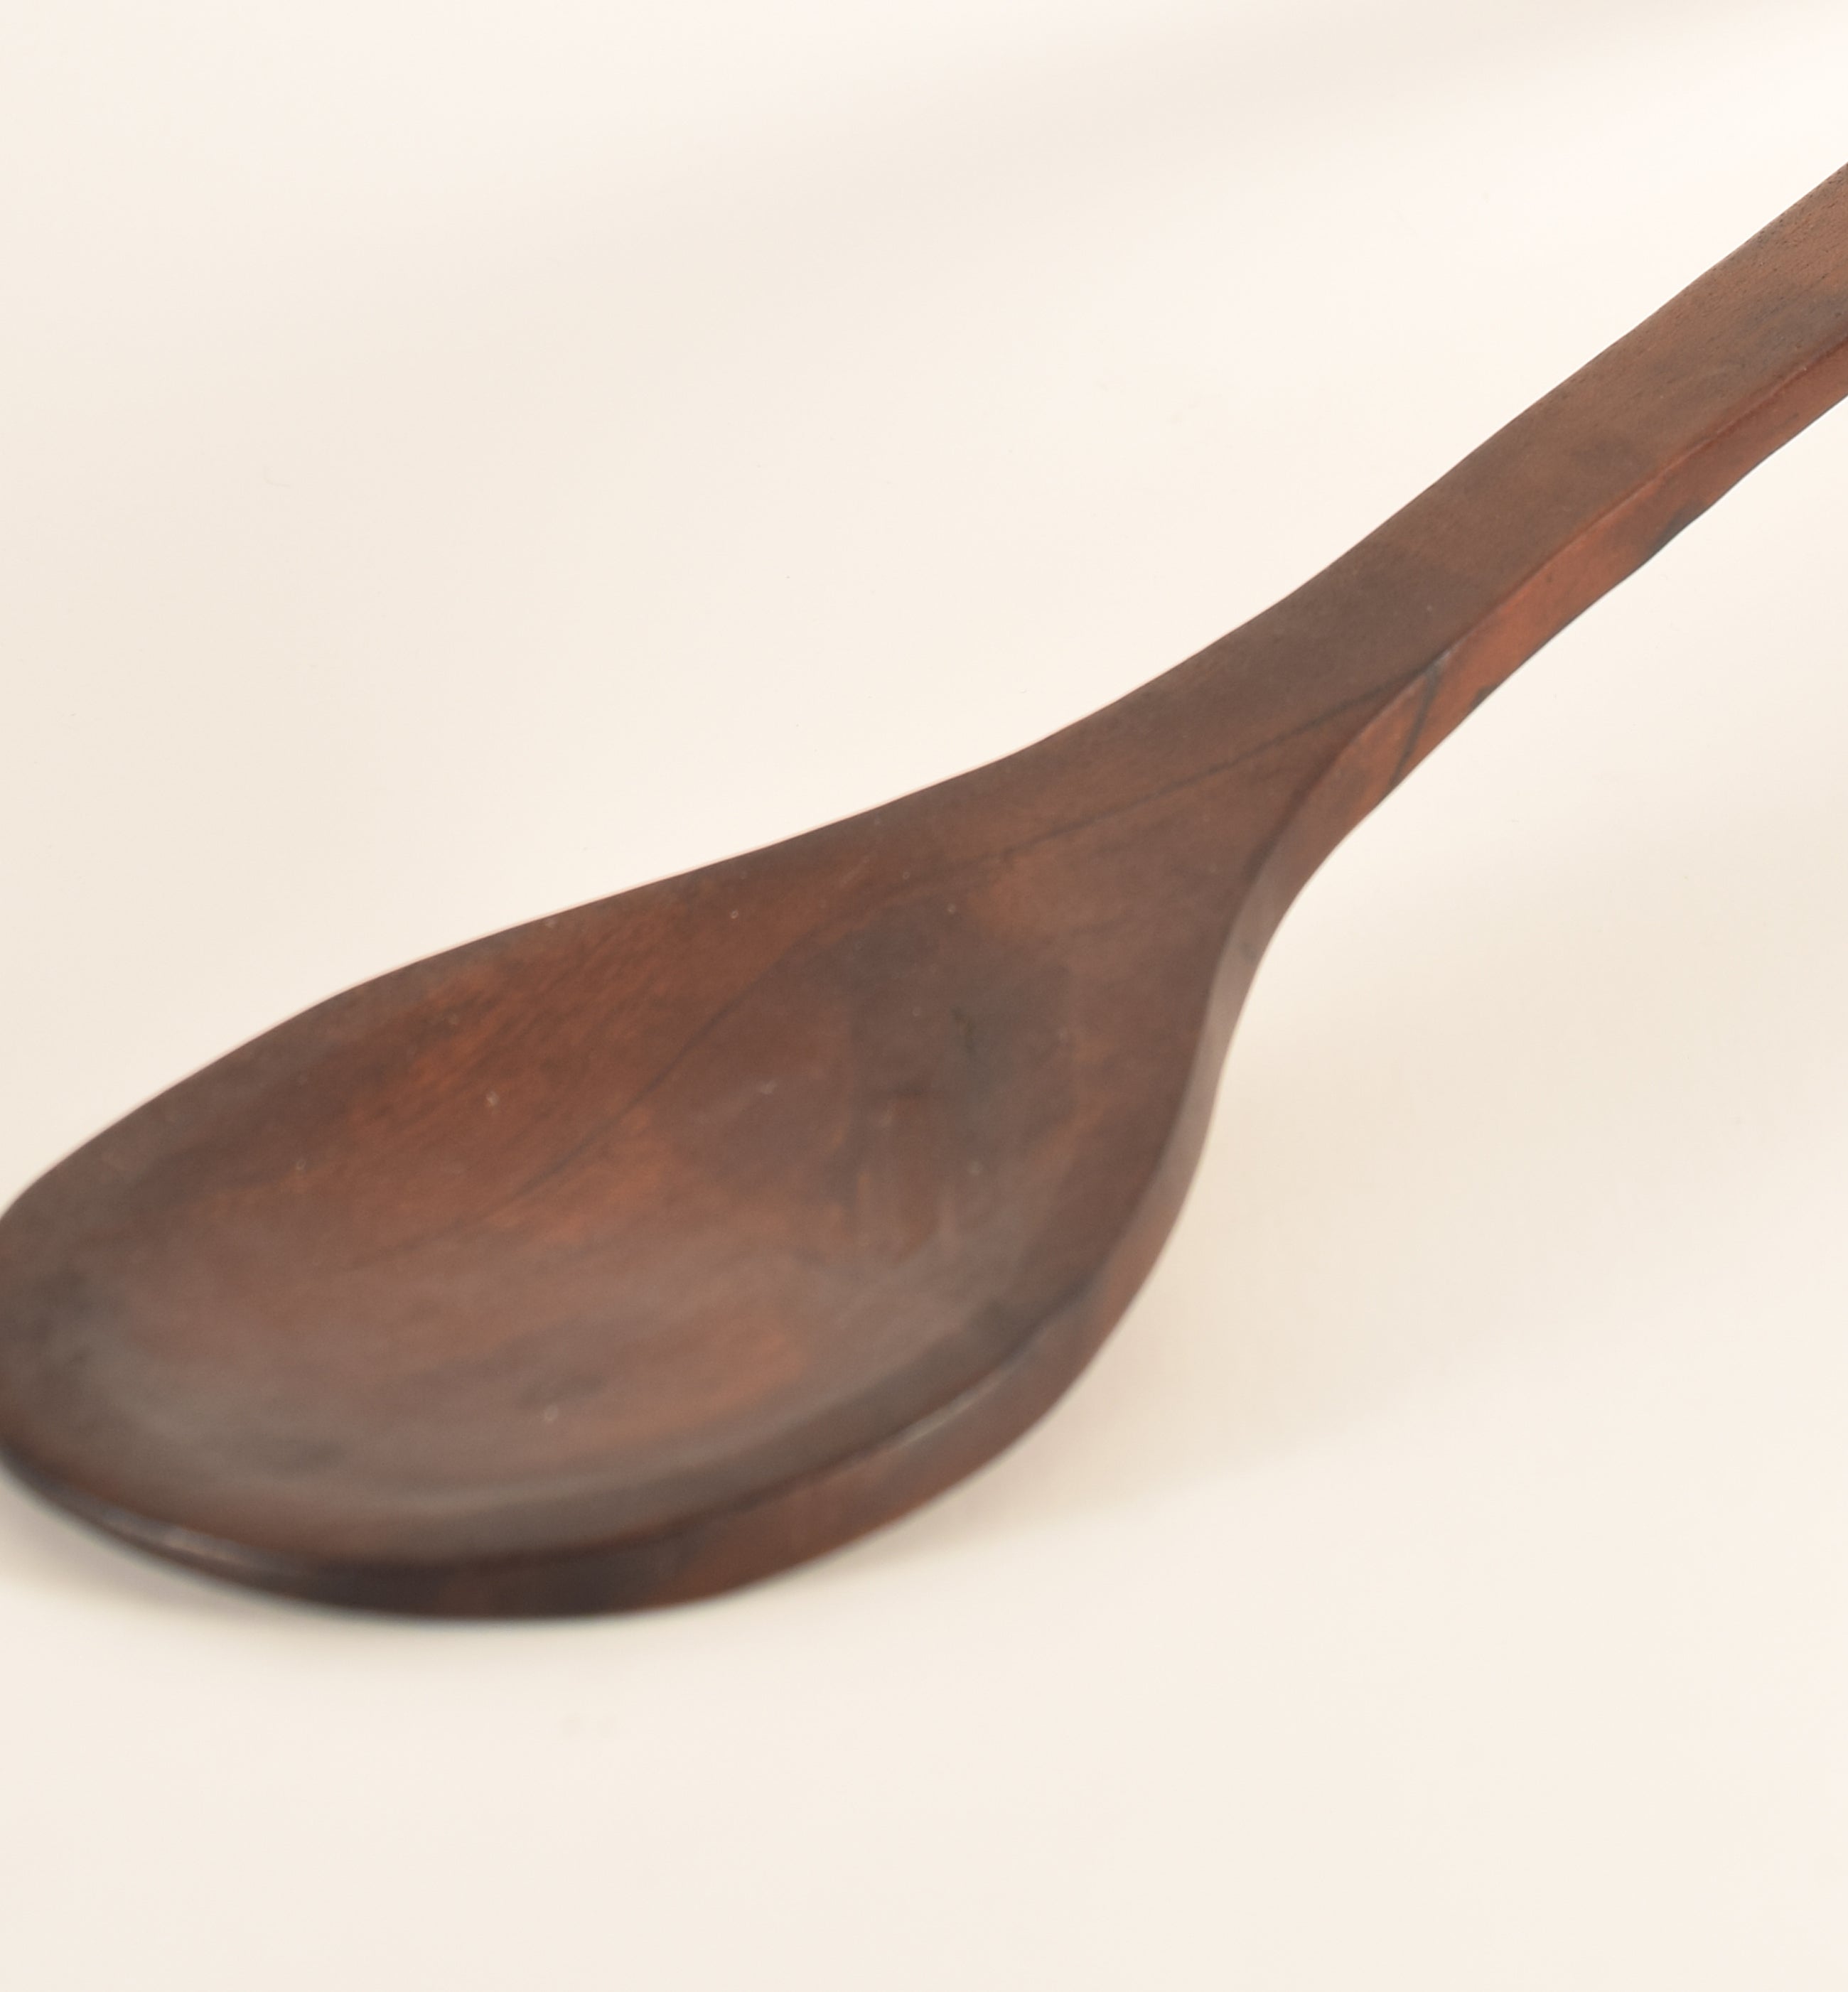 Wooden Ladle Large